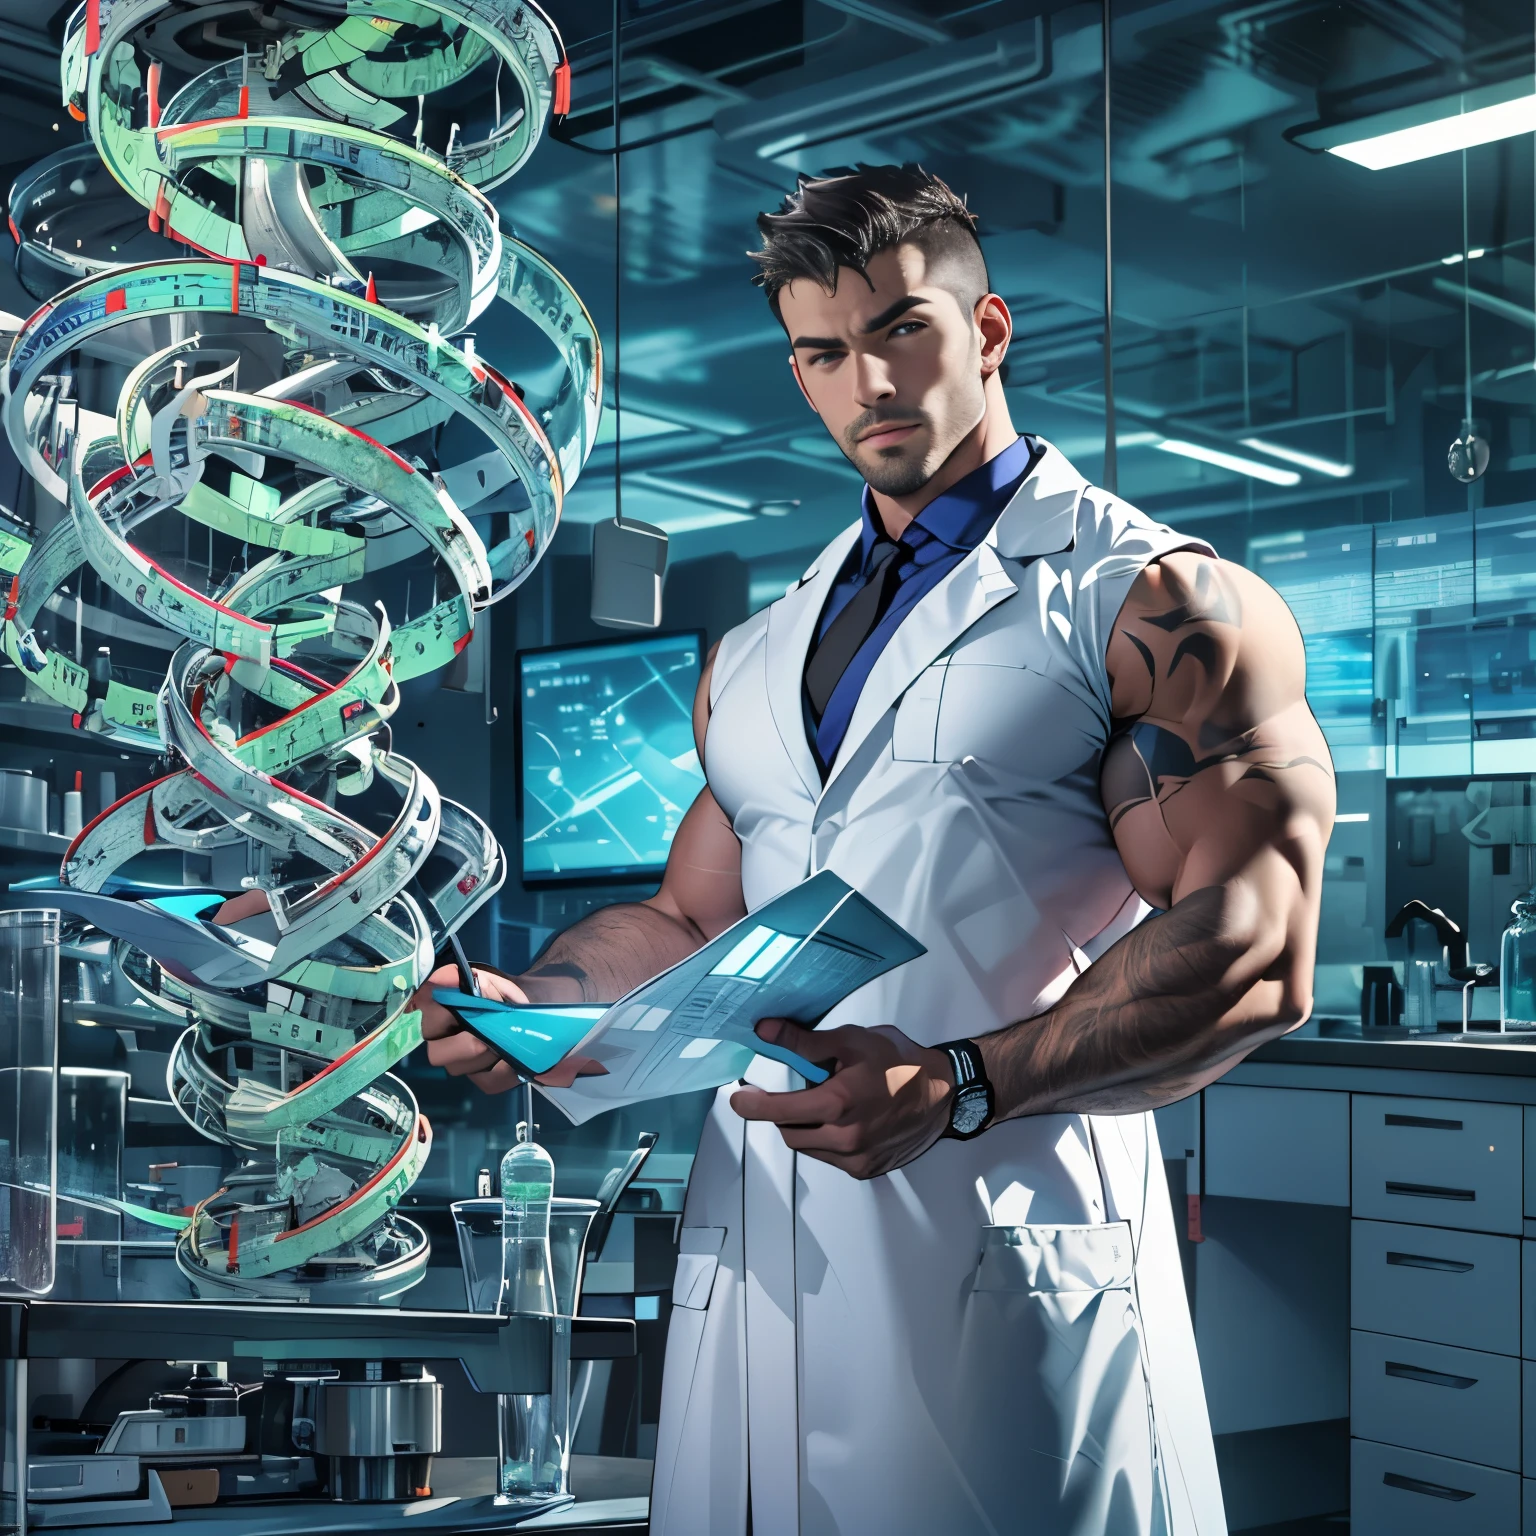 عالم وسيم يرتدي معطف المختبر الكاشف, عضلي, دراسة نموذج الحلزون الحمض النووي, إعداد المختبر المستقبلي, ركز, بشرة رائعة, انتفاخ كبير, عضلات كبيرة